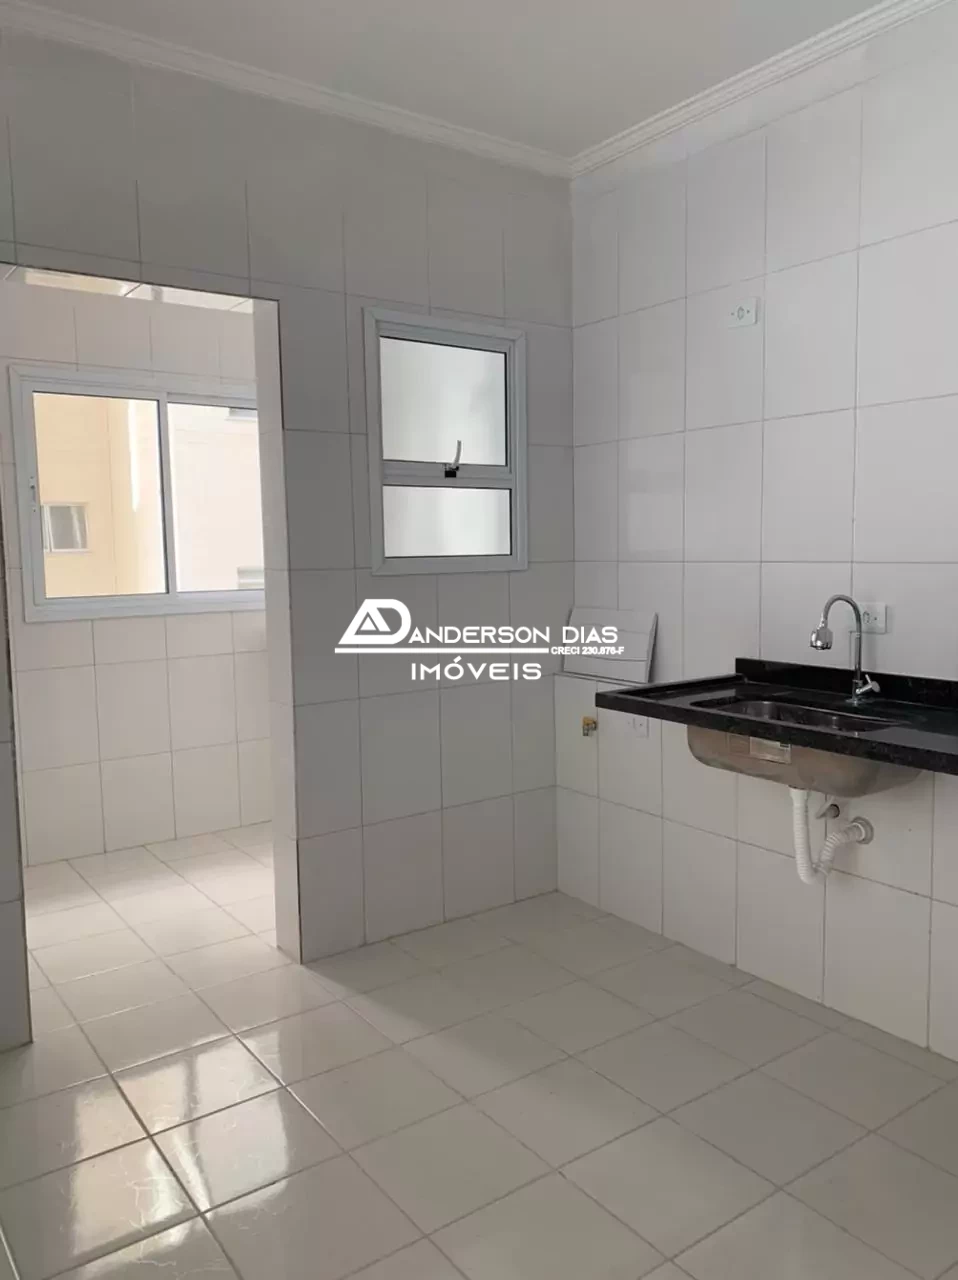 Apartamento com 2 dormitórios à venda, 83 m² por R$650.000 - Cidade Jardim - Caraguatatuba/SP